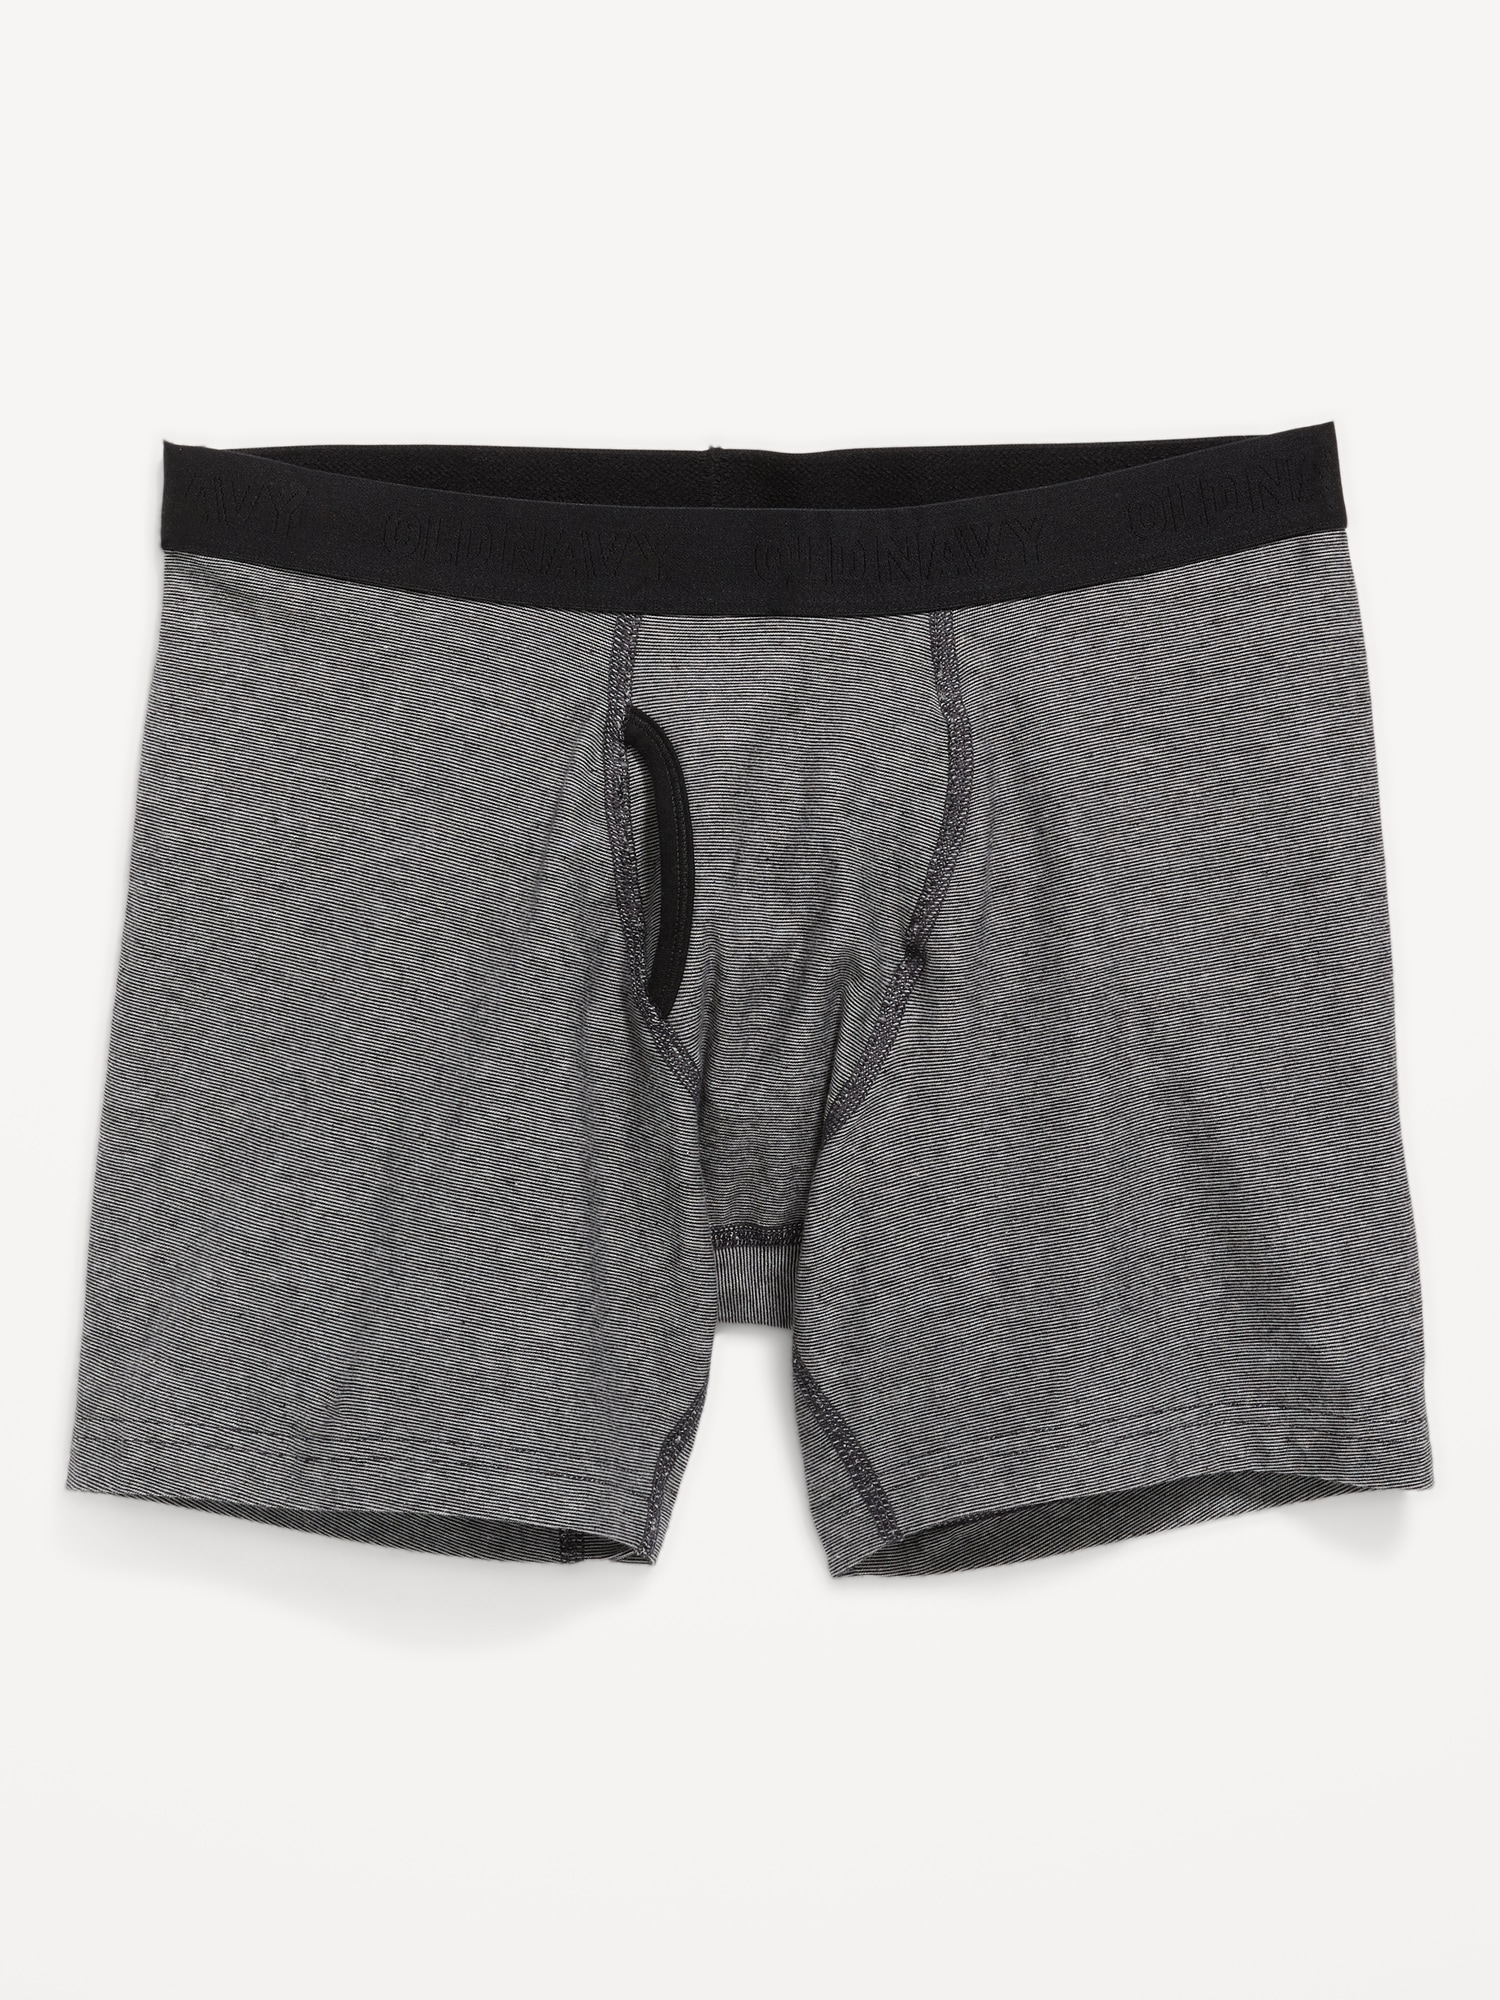 Soft-Washed Built-In Flex Boxer-Brief Underwear for Men -- 6.25-inch inseam